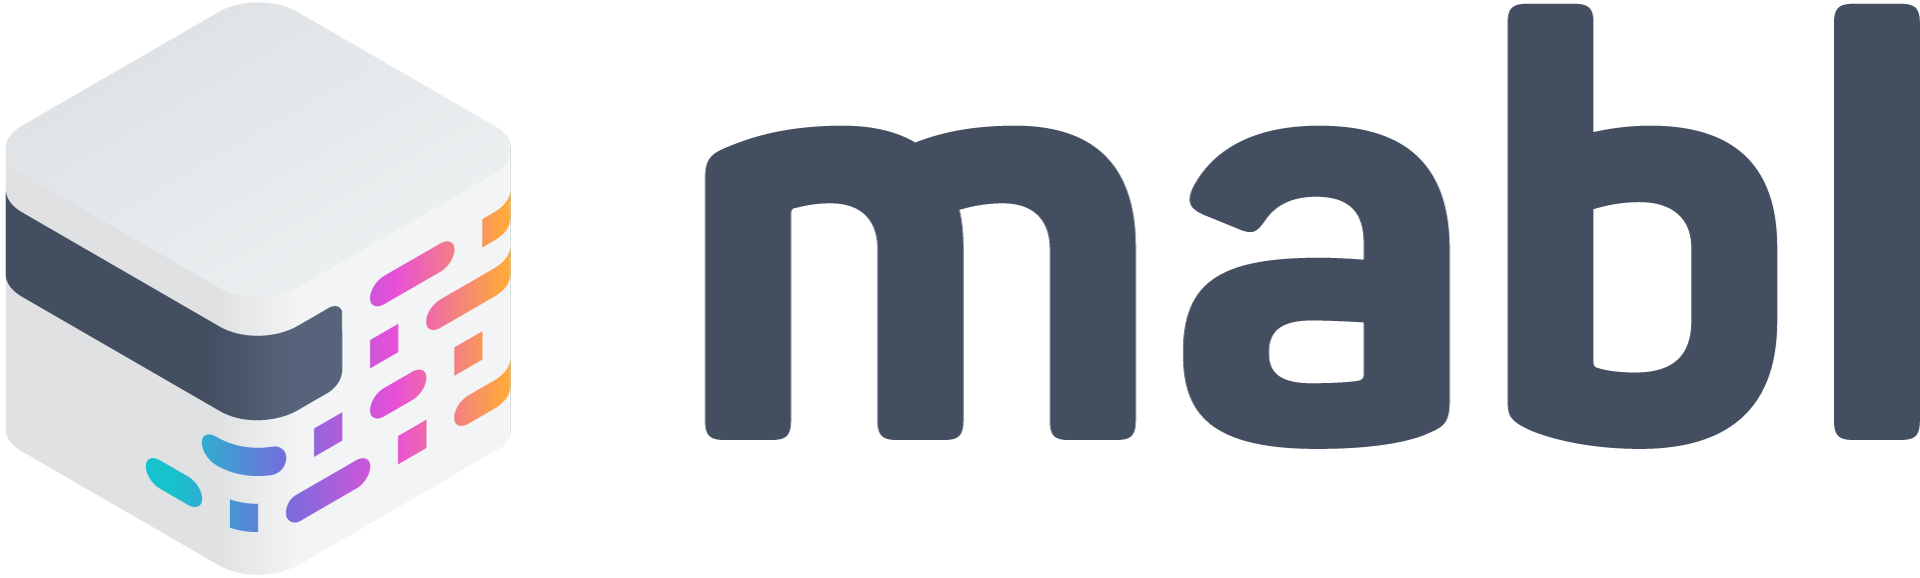 Mabl Company Logo